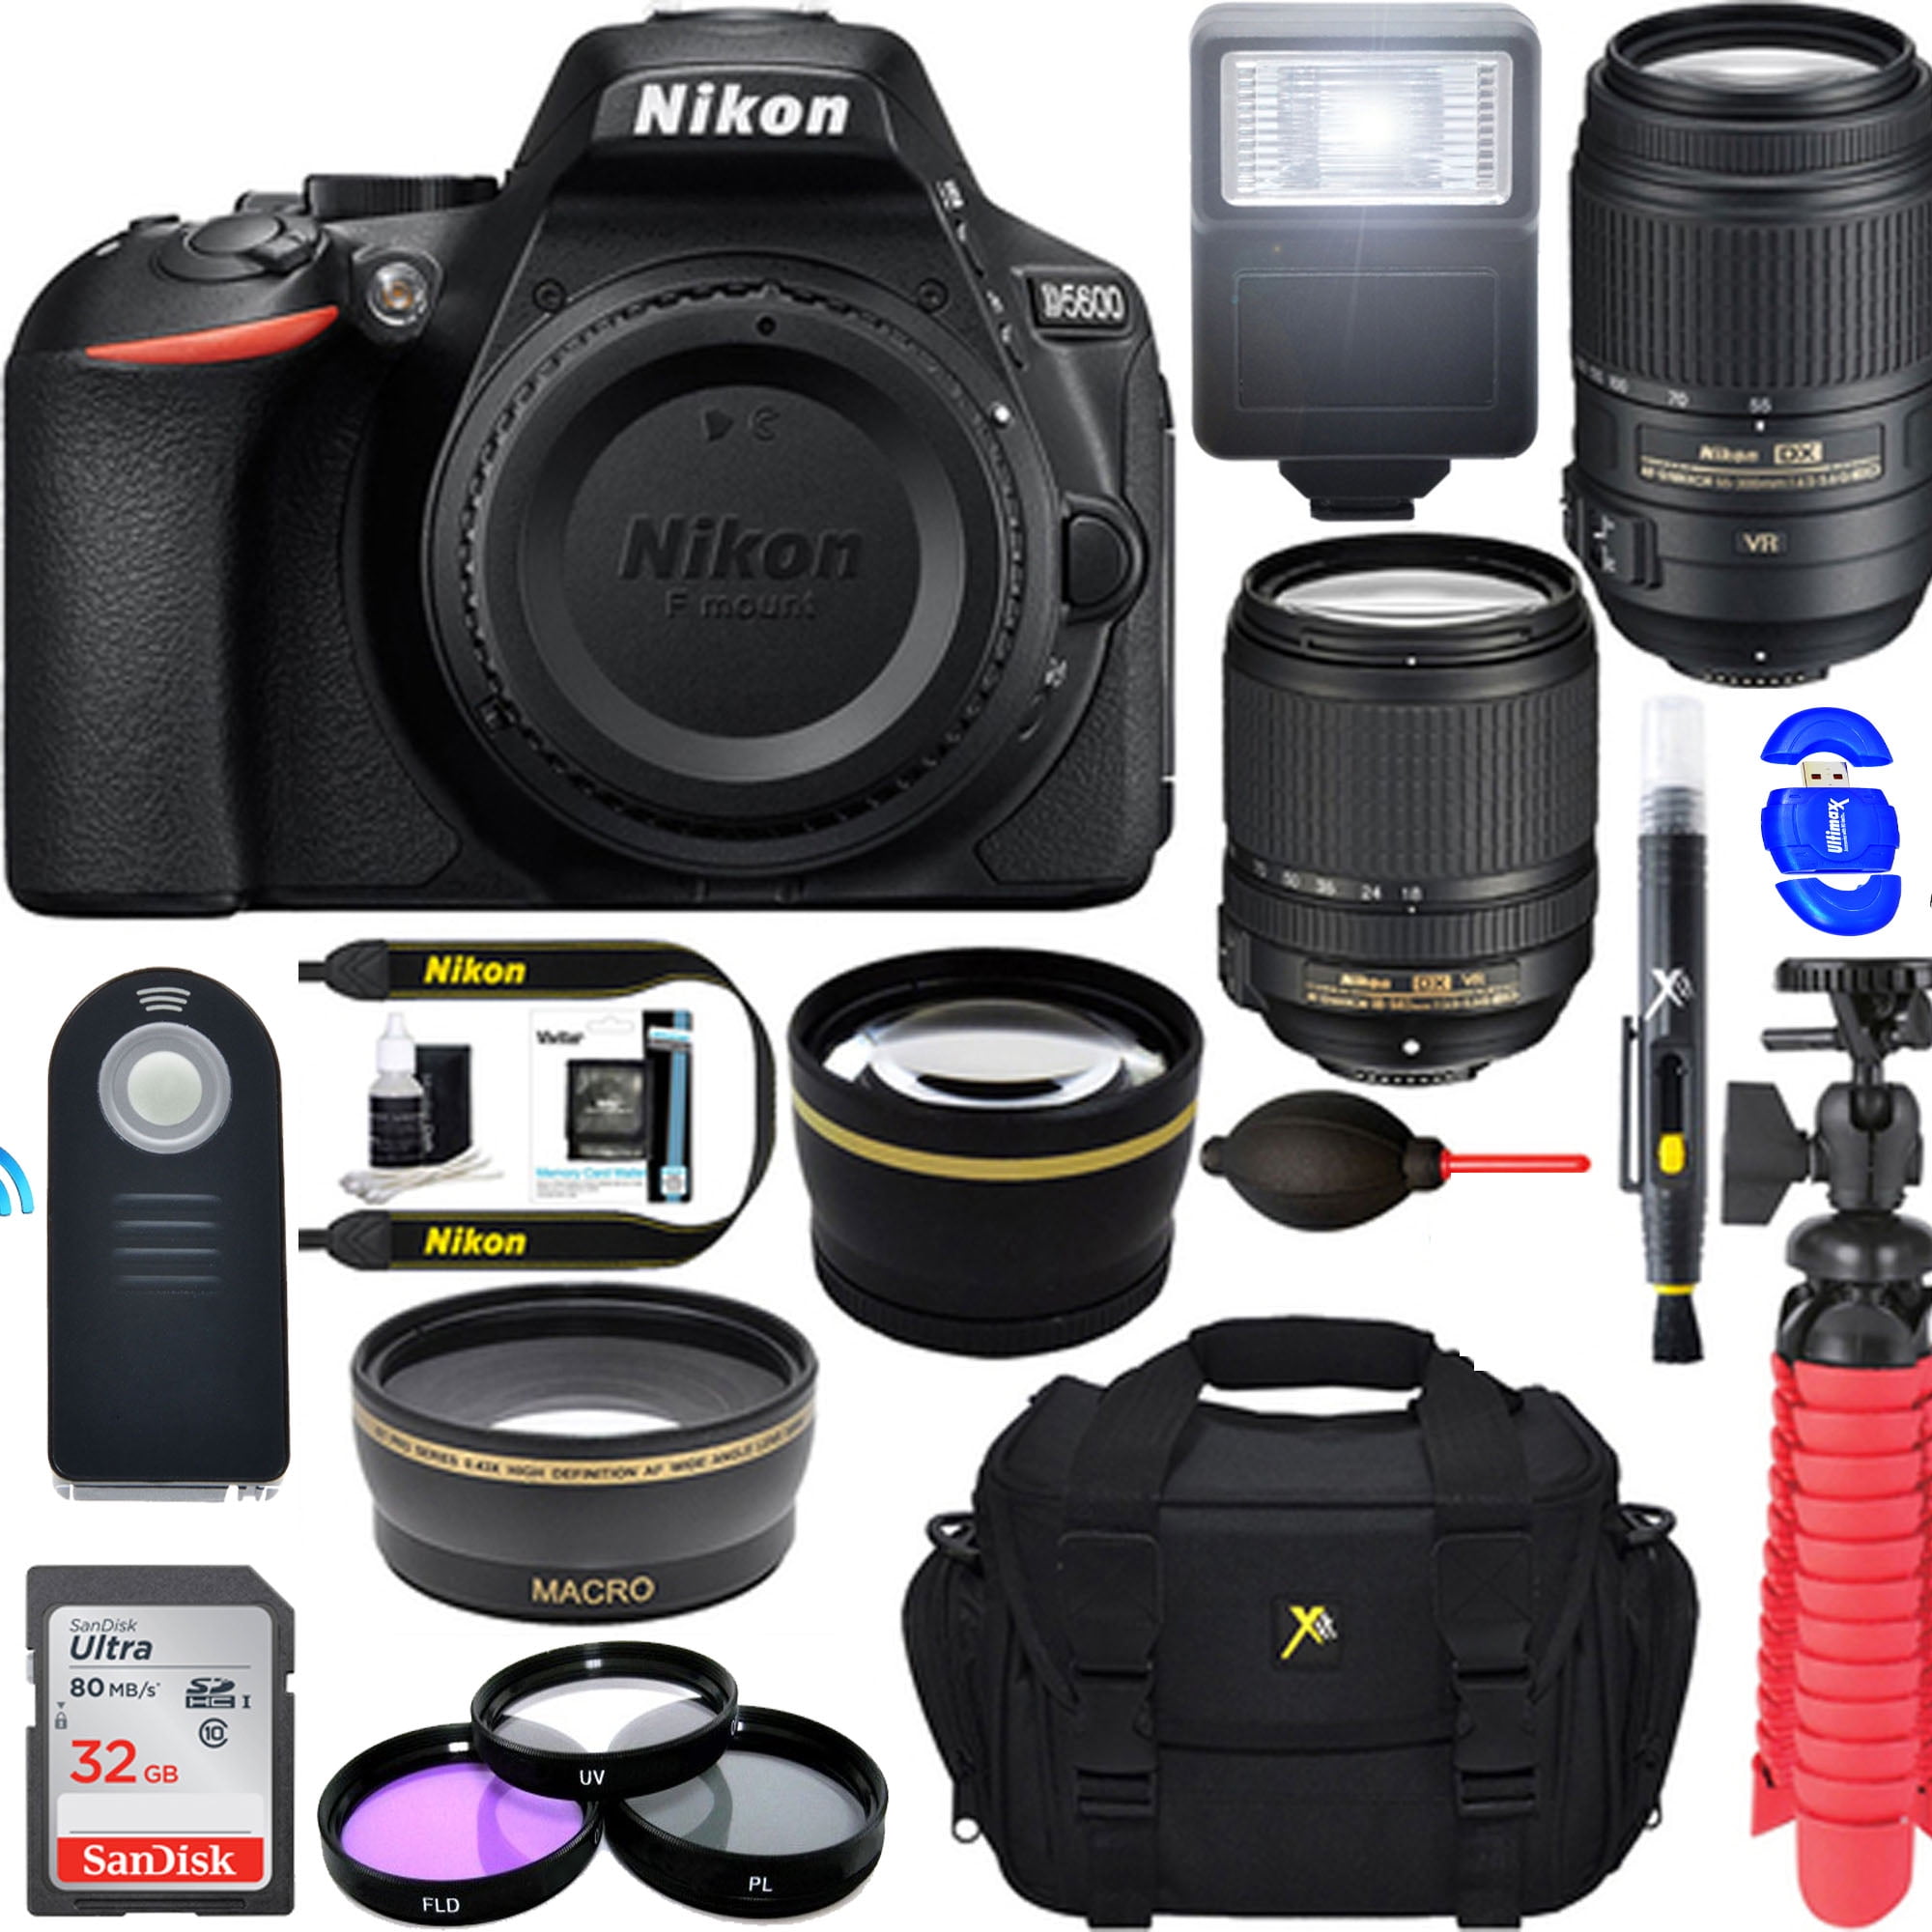 Lens Hoods Electronics Redcolourful Hb 69 Lens Hood For Nikon Af S Dx Nikkor 18 55mm F 3 5 5 6g Vr Ii